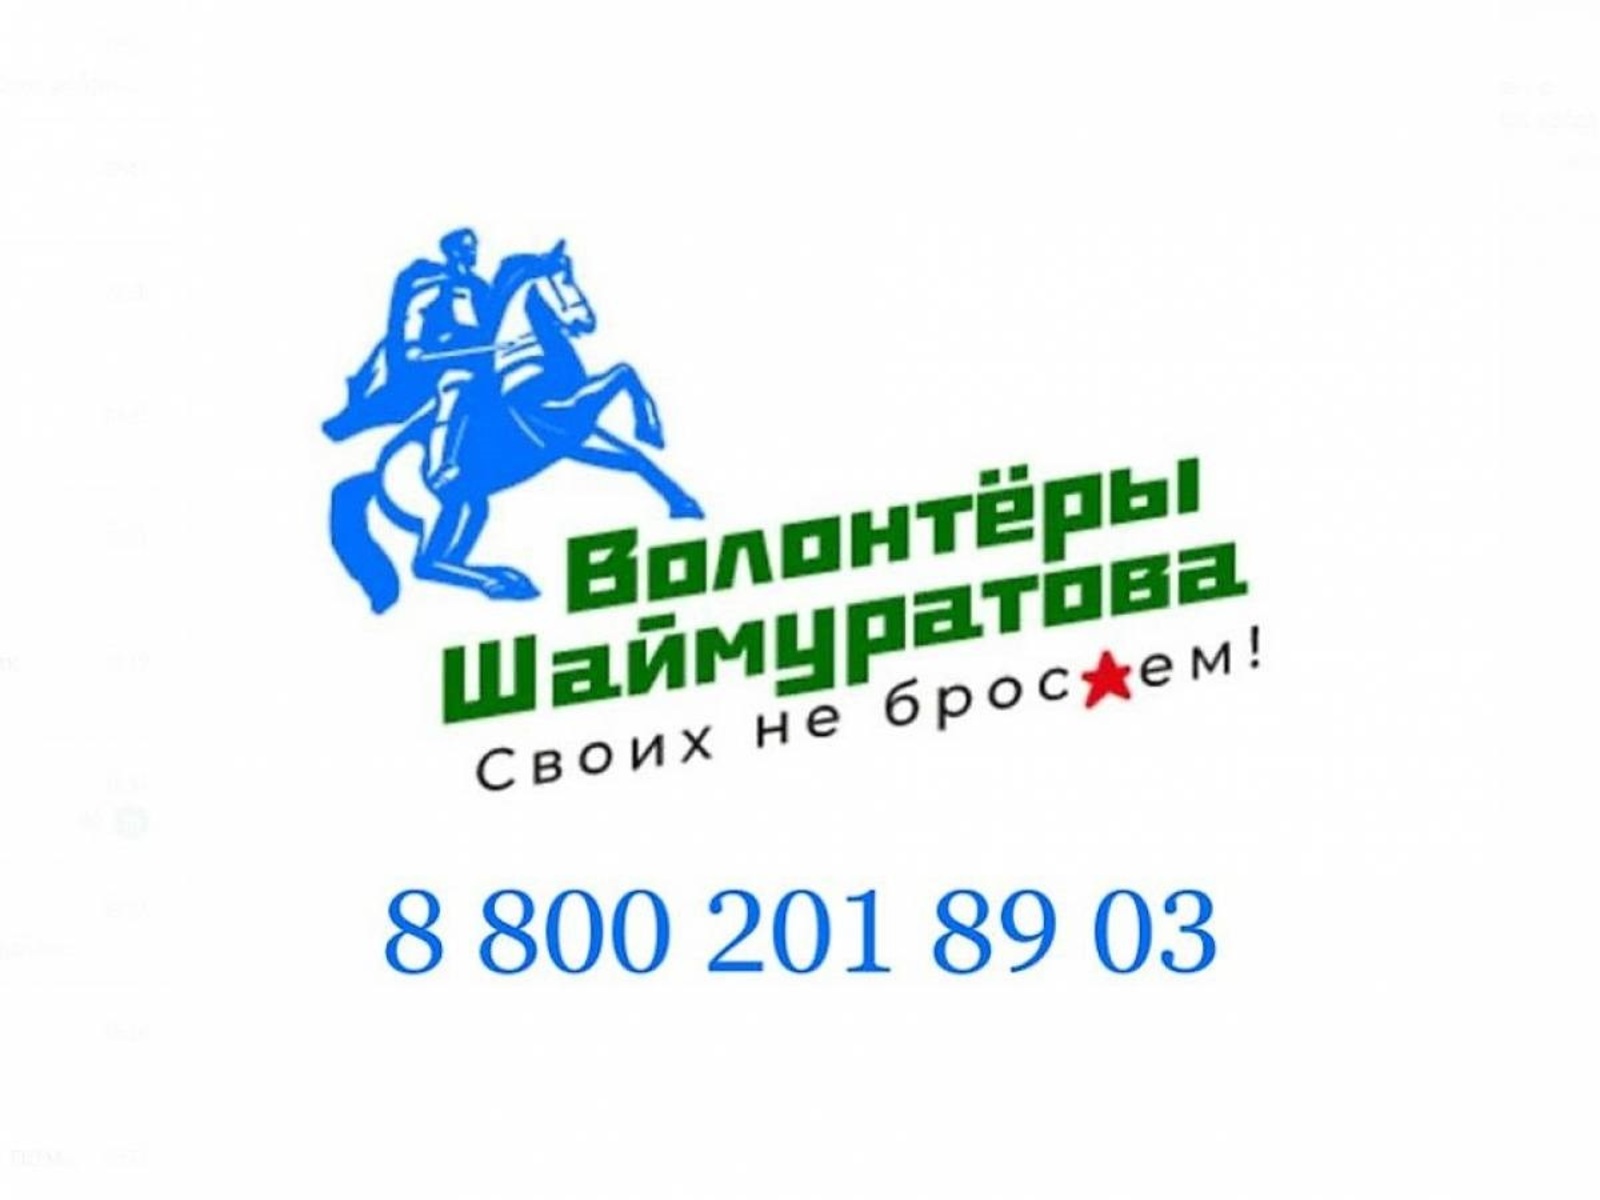 В колл-центр волонтерского штаба имени М. Шаймуратова поступило 9986 звонков